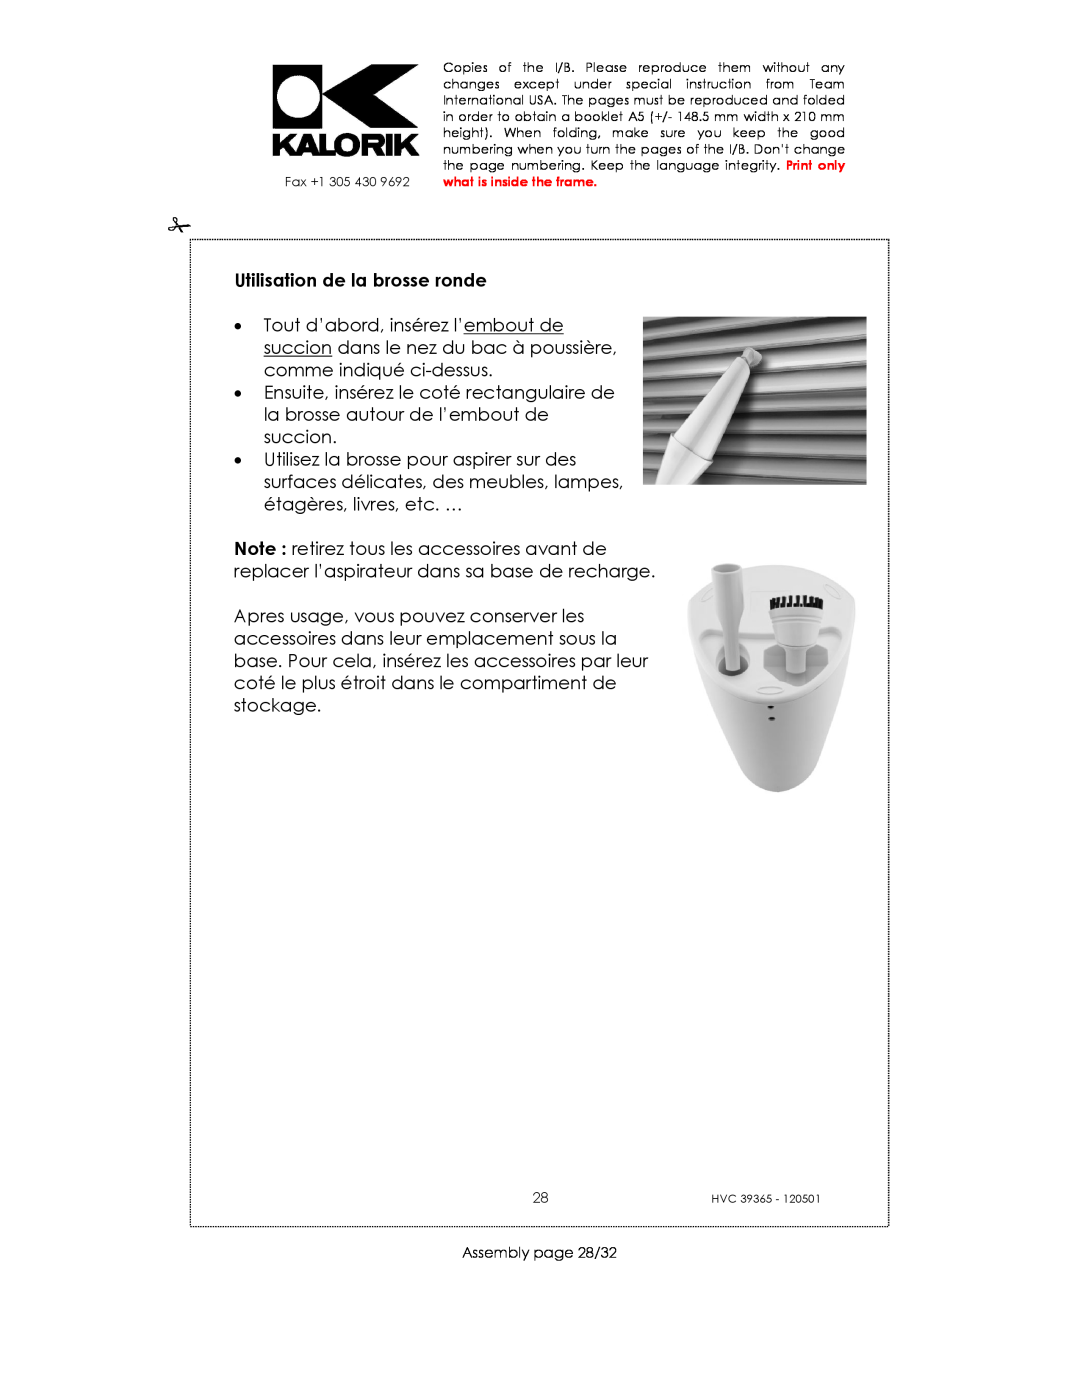 Kalorik HVC 39365 manual Utilisation de la brosse ronde, Assembly page 28/32 